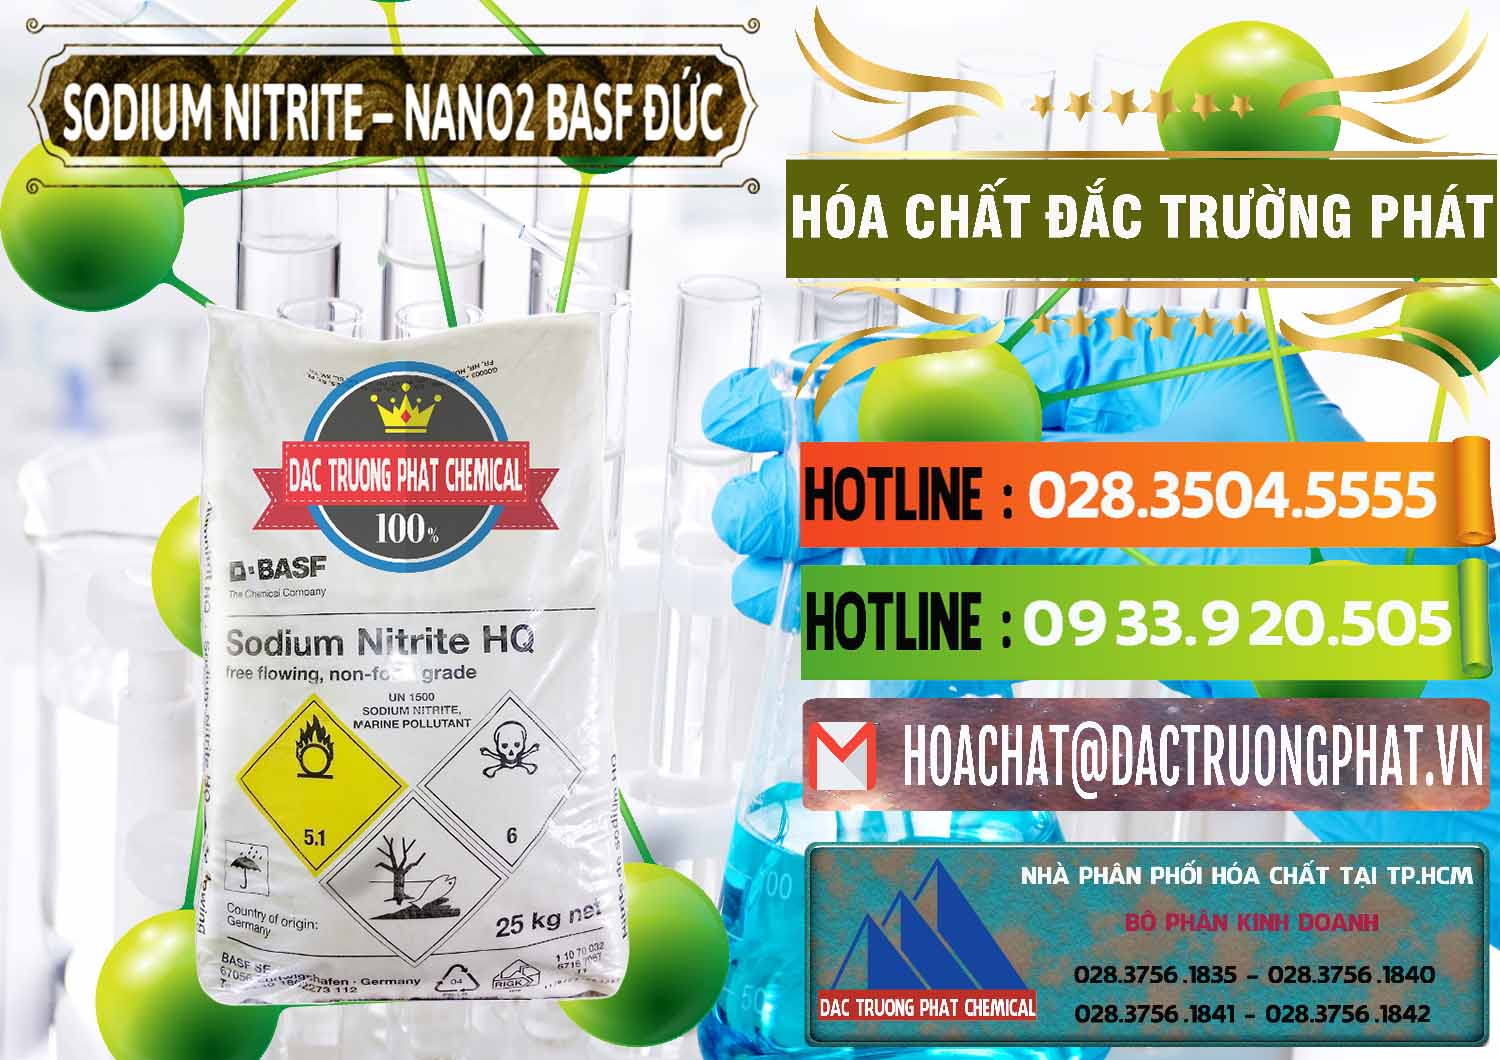 Nơi bán & cung cấp Sodium Nitrite - NANO2 Đức BASF Germany - 0148 - Cty nhập khẩu & phân phối hóa chất tại TP.HCM - cungcaphoachat.com.vn